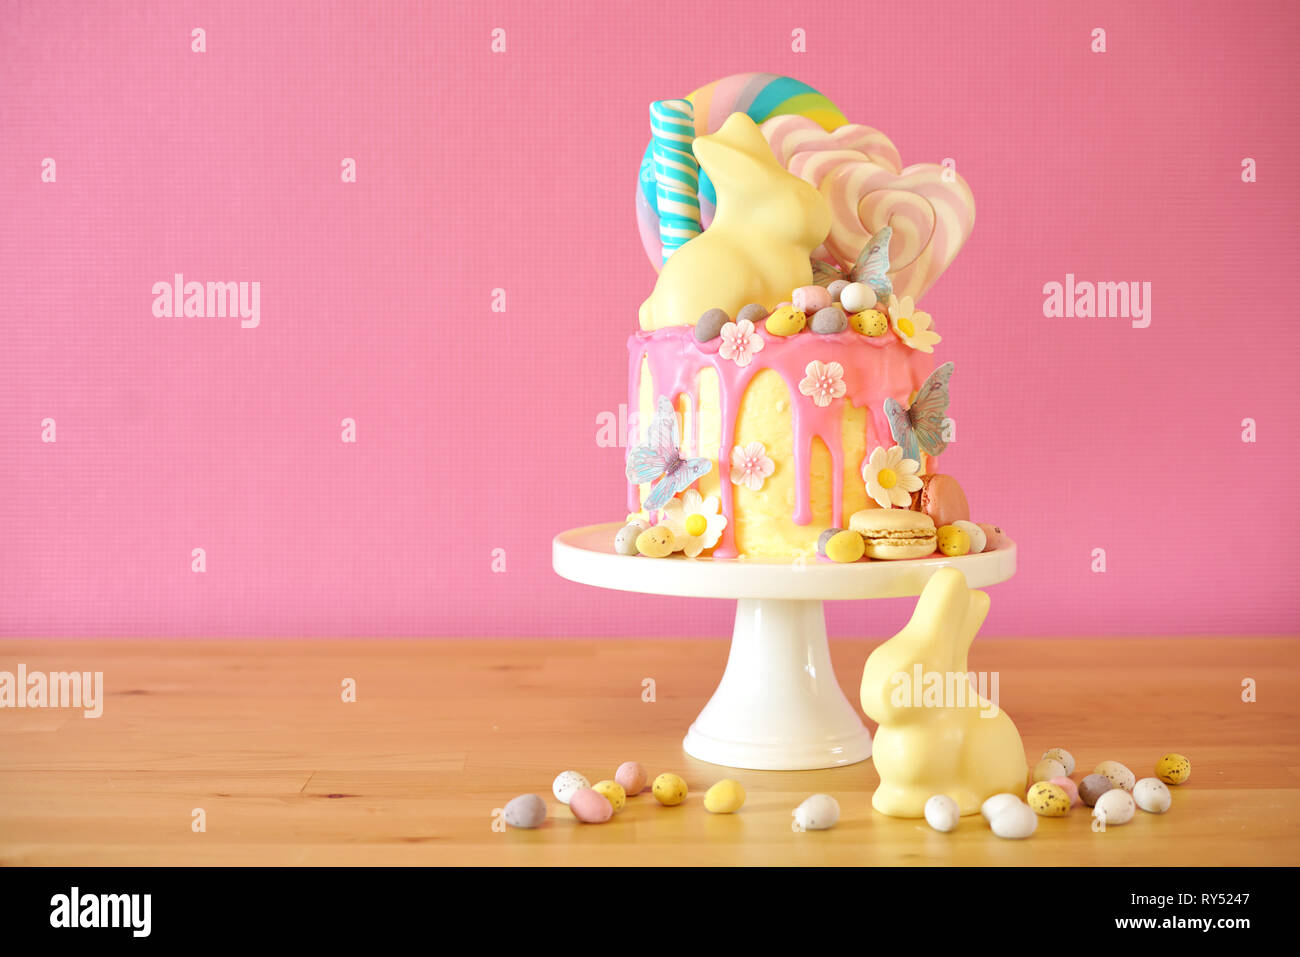 Sulla tendenza di Pasqua tema candy land gocciolare torta decorata con connettori lollipop, candy uova e cioccolato bianco bunny in parte messa in tavola. Foto Stock